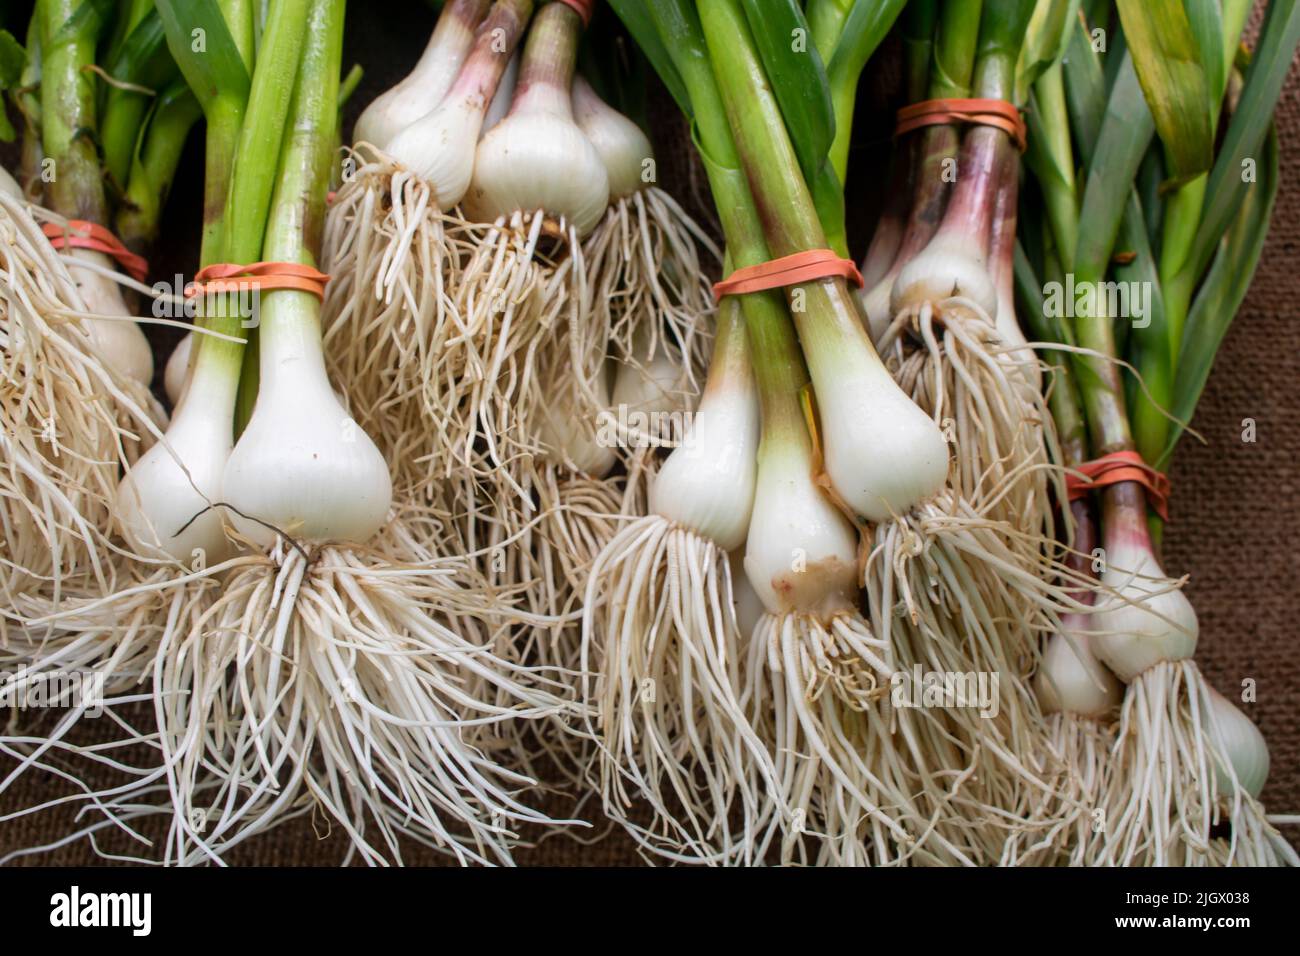 Bulbi d'aglio con gambi verdi lunghi in mostra al mercato di un agricoltore legato con fasce elastiche rosse Foto Stock